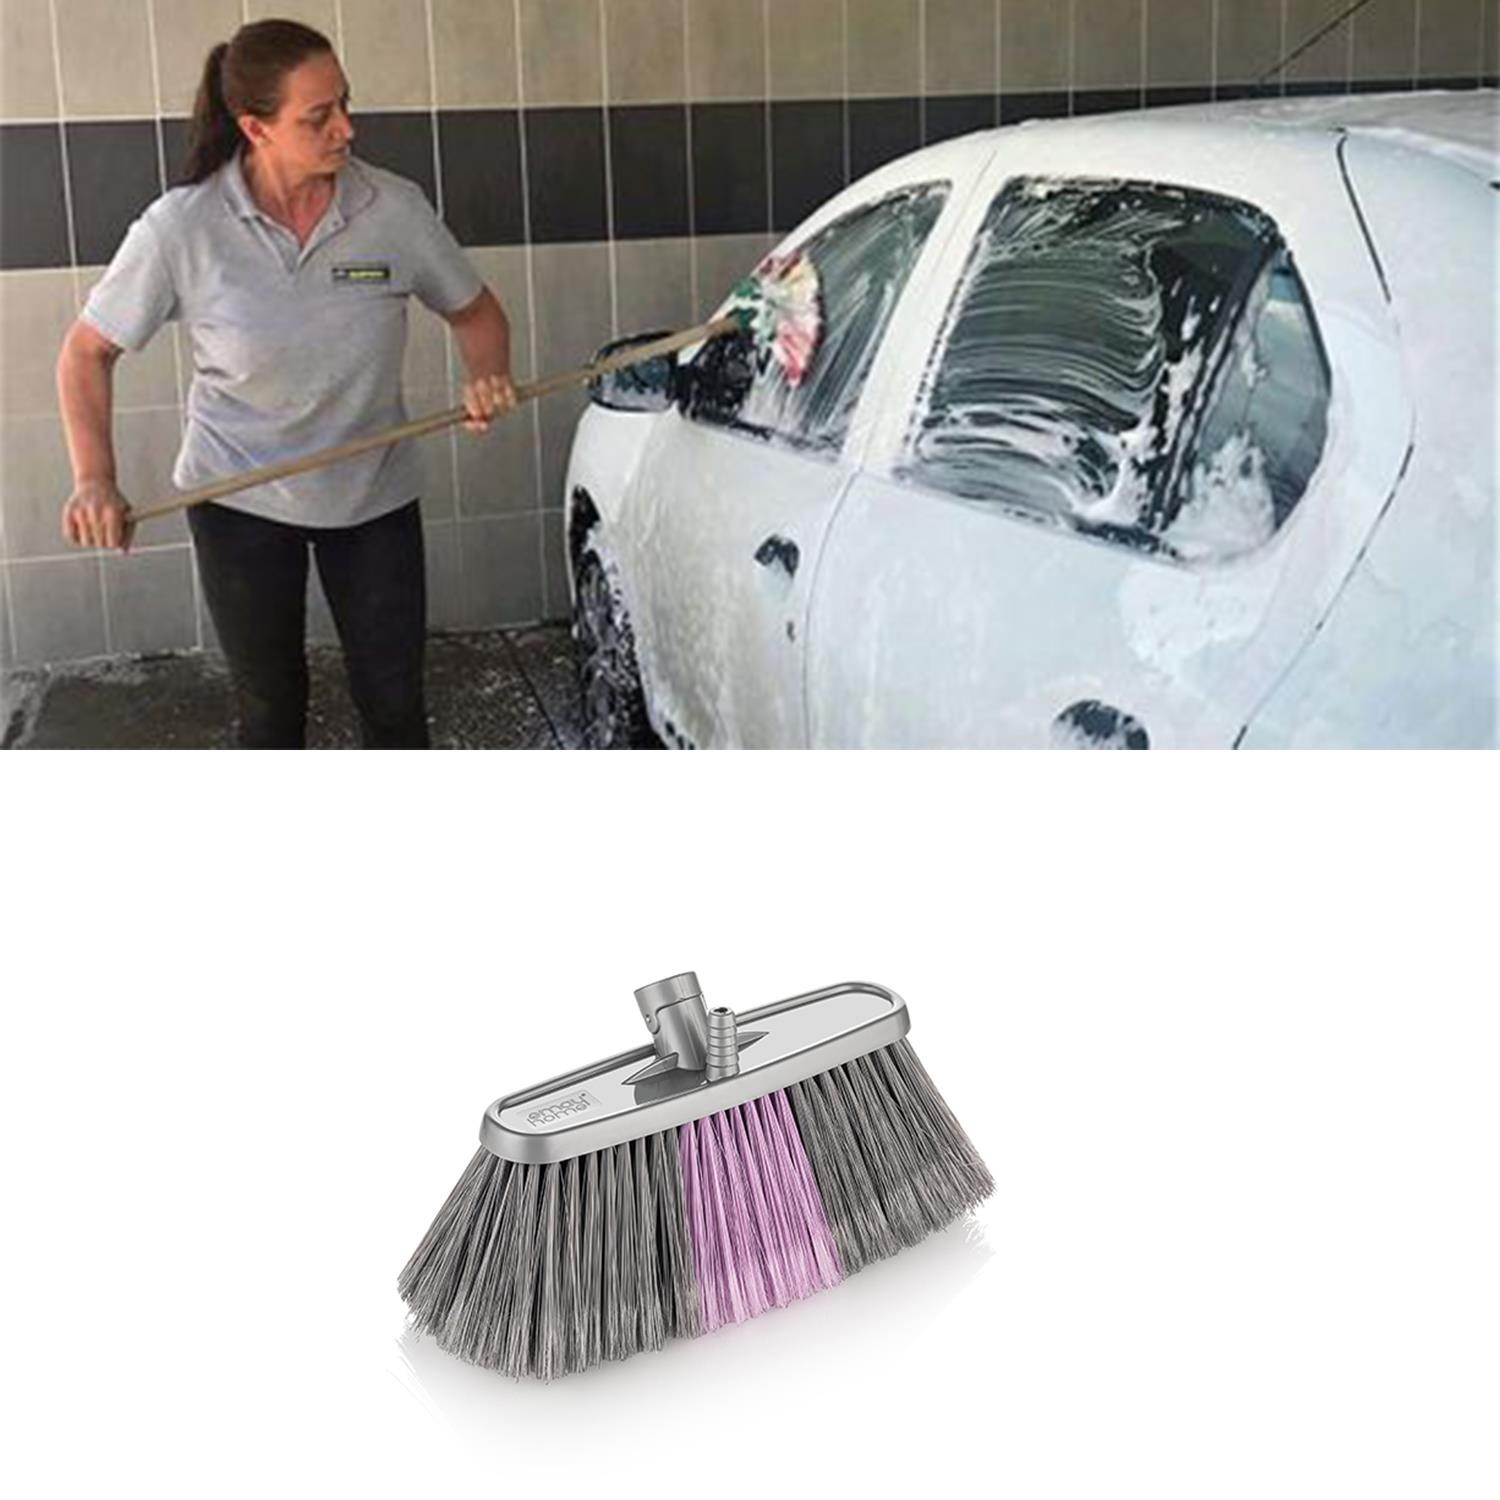 Araba Araç Oto Otomobil Wc Banyo Ev Yıkama Köpükleme Temizleme Fırçası Yumuşak Uçlu Fırça 20 cm